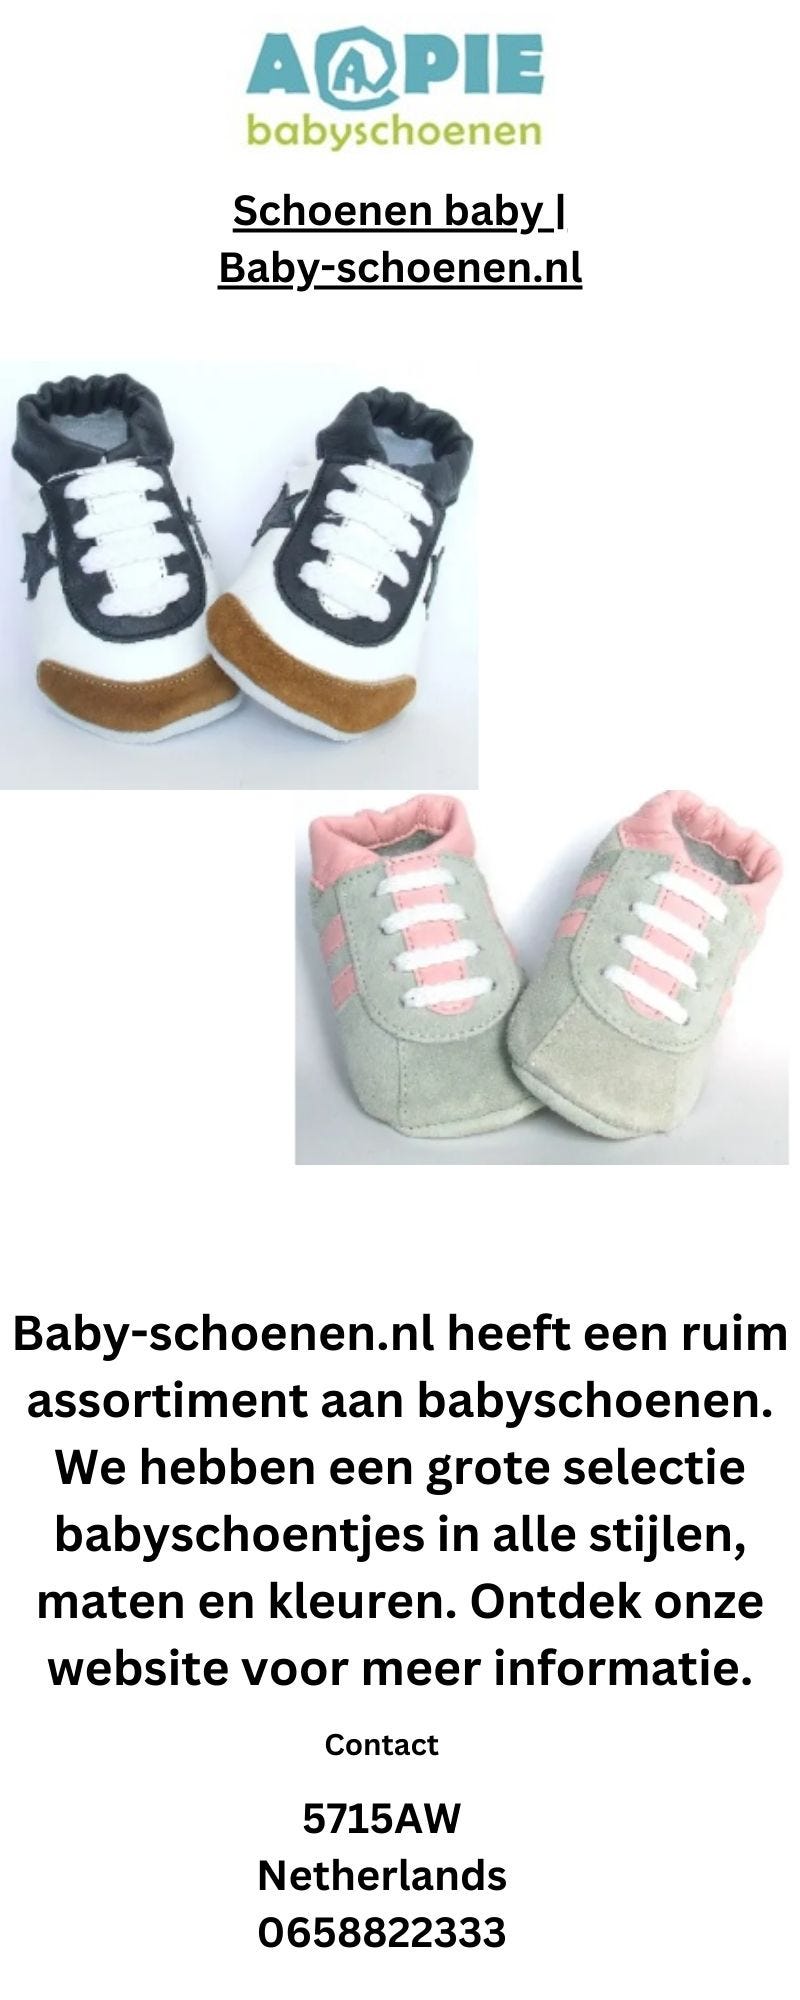 Schoenen baby | Baby-schoenen.nl - Babyschoenen - Medium